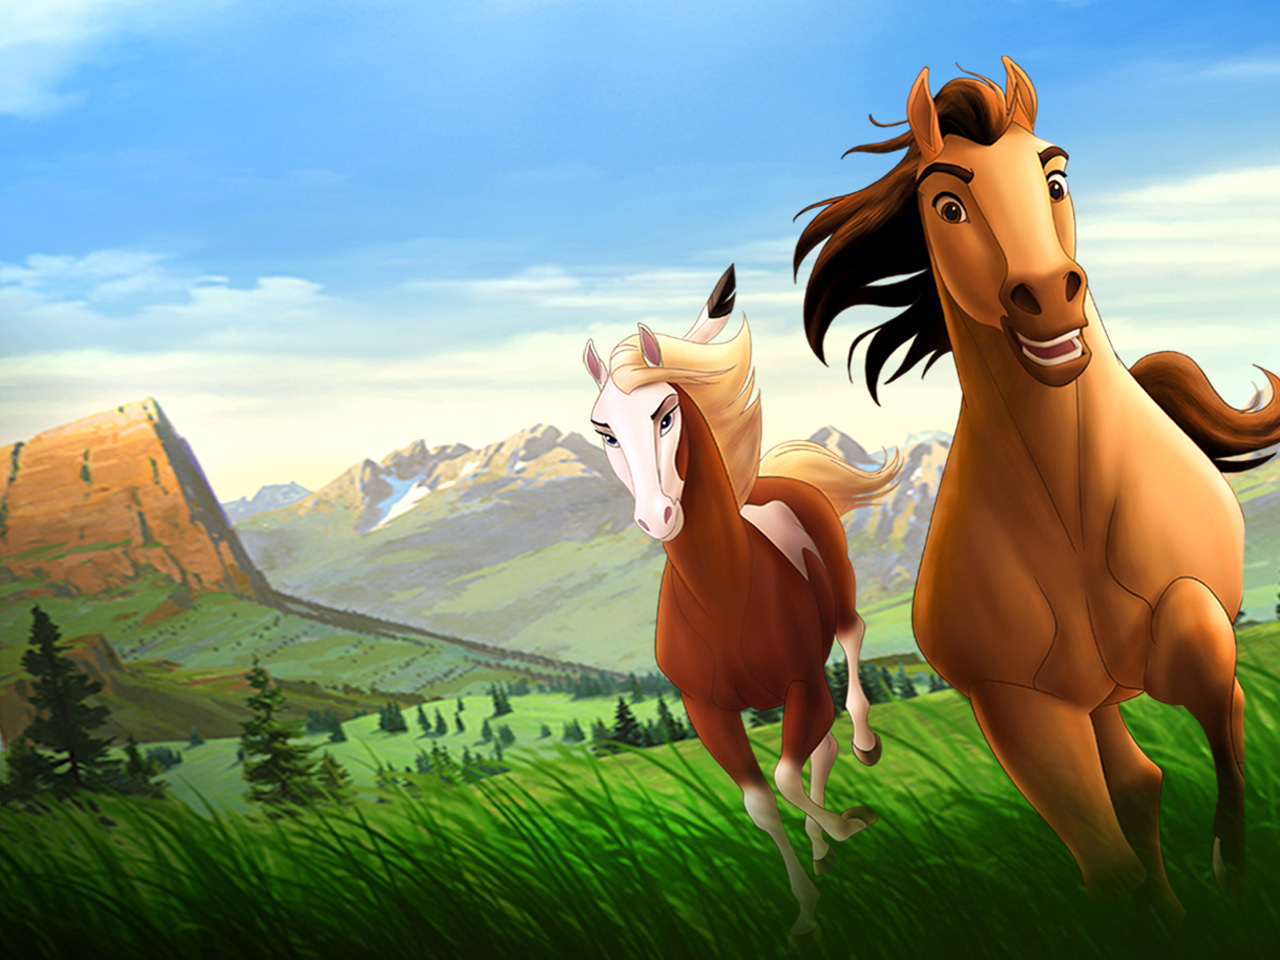 SAB 14 GEN – Leggere il cinema: Spirit, cavallo selvaggio